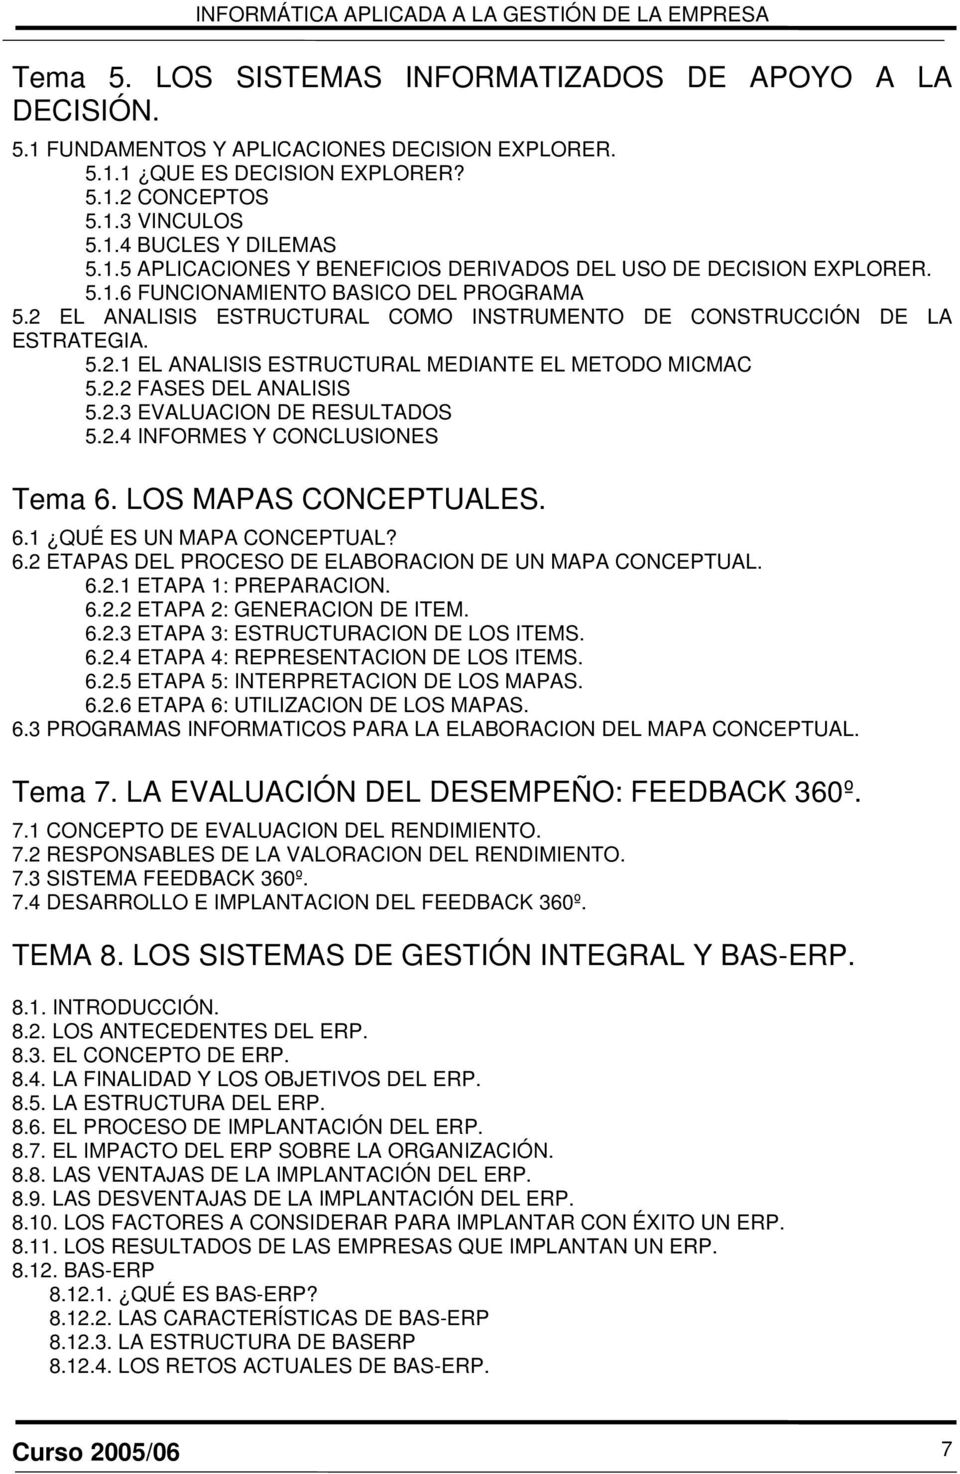 2.3 EVALUACION DE RESULTADOS 5.2.4 INFORMES Y CONCLUSIONES Tema 6. LOS MAPAS CONCEPTUALES. 6.1 QUÉ ES UN MAPA CONCEPTUAL? 6.2 ETAPAS DEL PROCESO DE ELABORACION DE UN MAPA CONCEPTUAL. 6.2.1 ETAPA 1: PREPARACION.